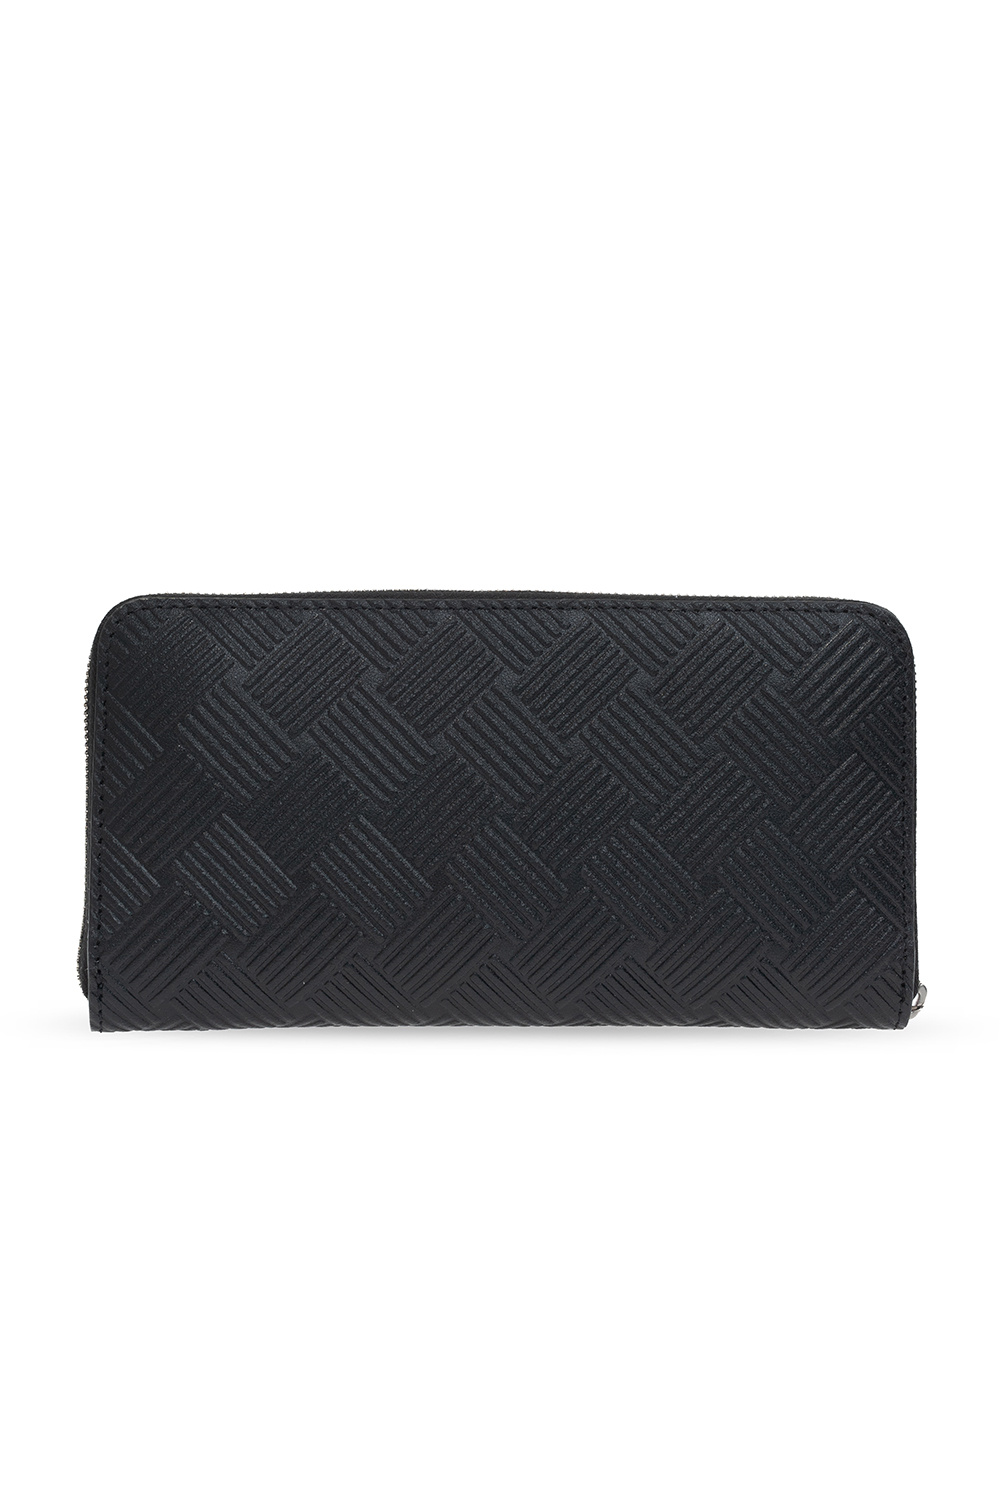 Bottega Veneta Leather wallet with logo